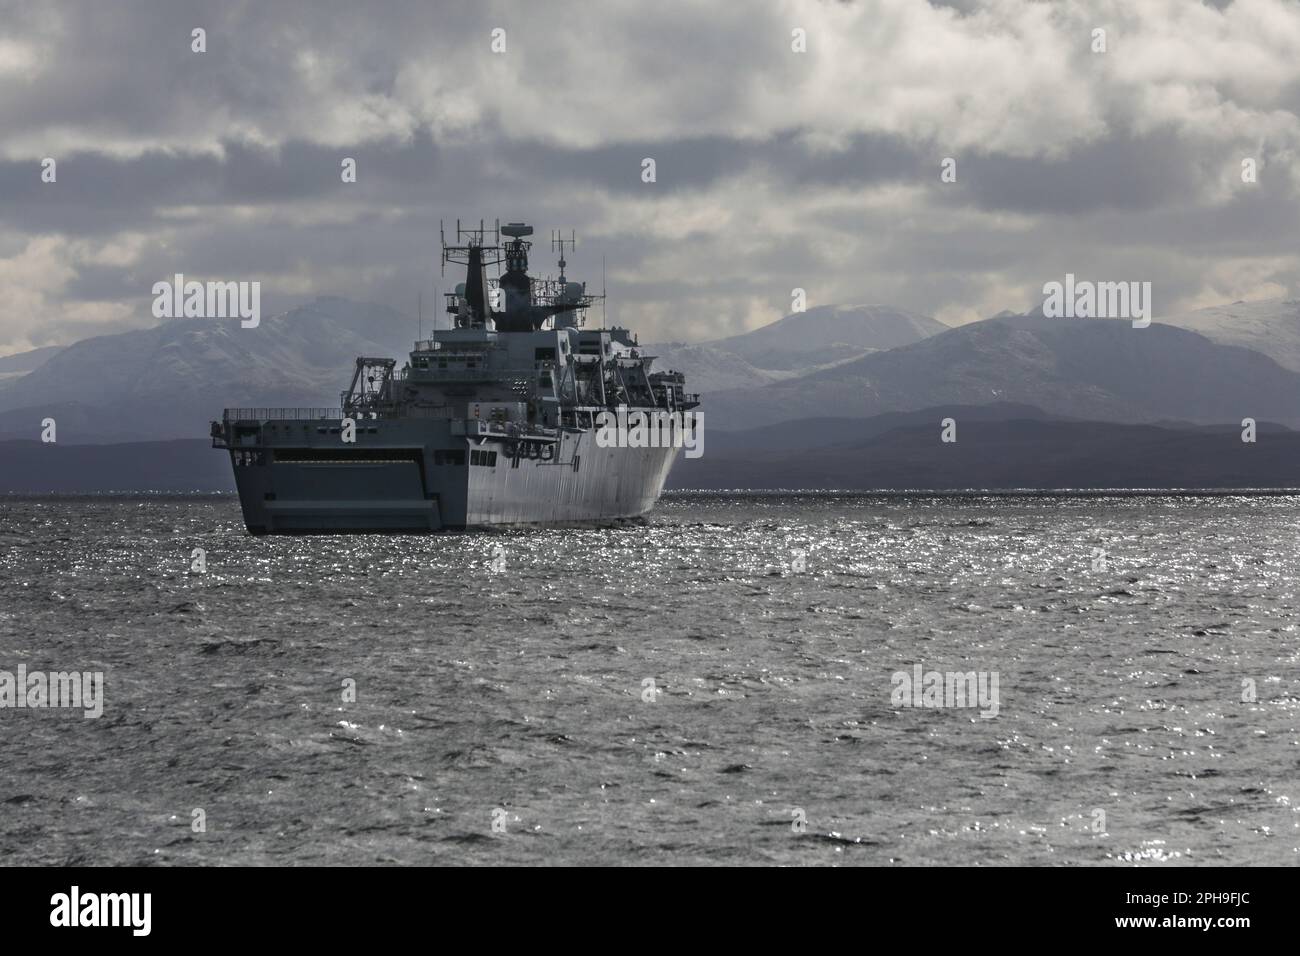 Buque de guerra anfibio clase Albion británico en el mar Foto de stock